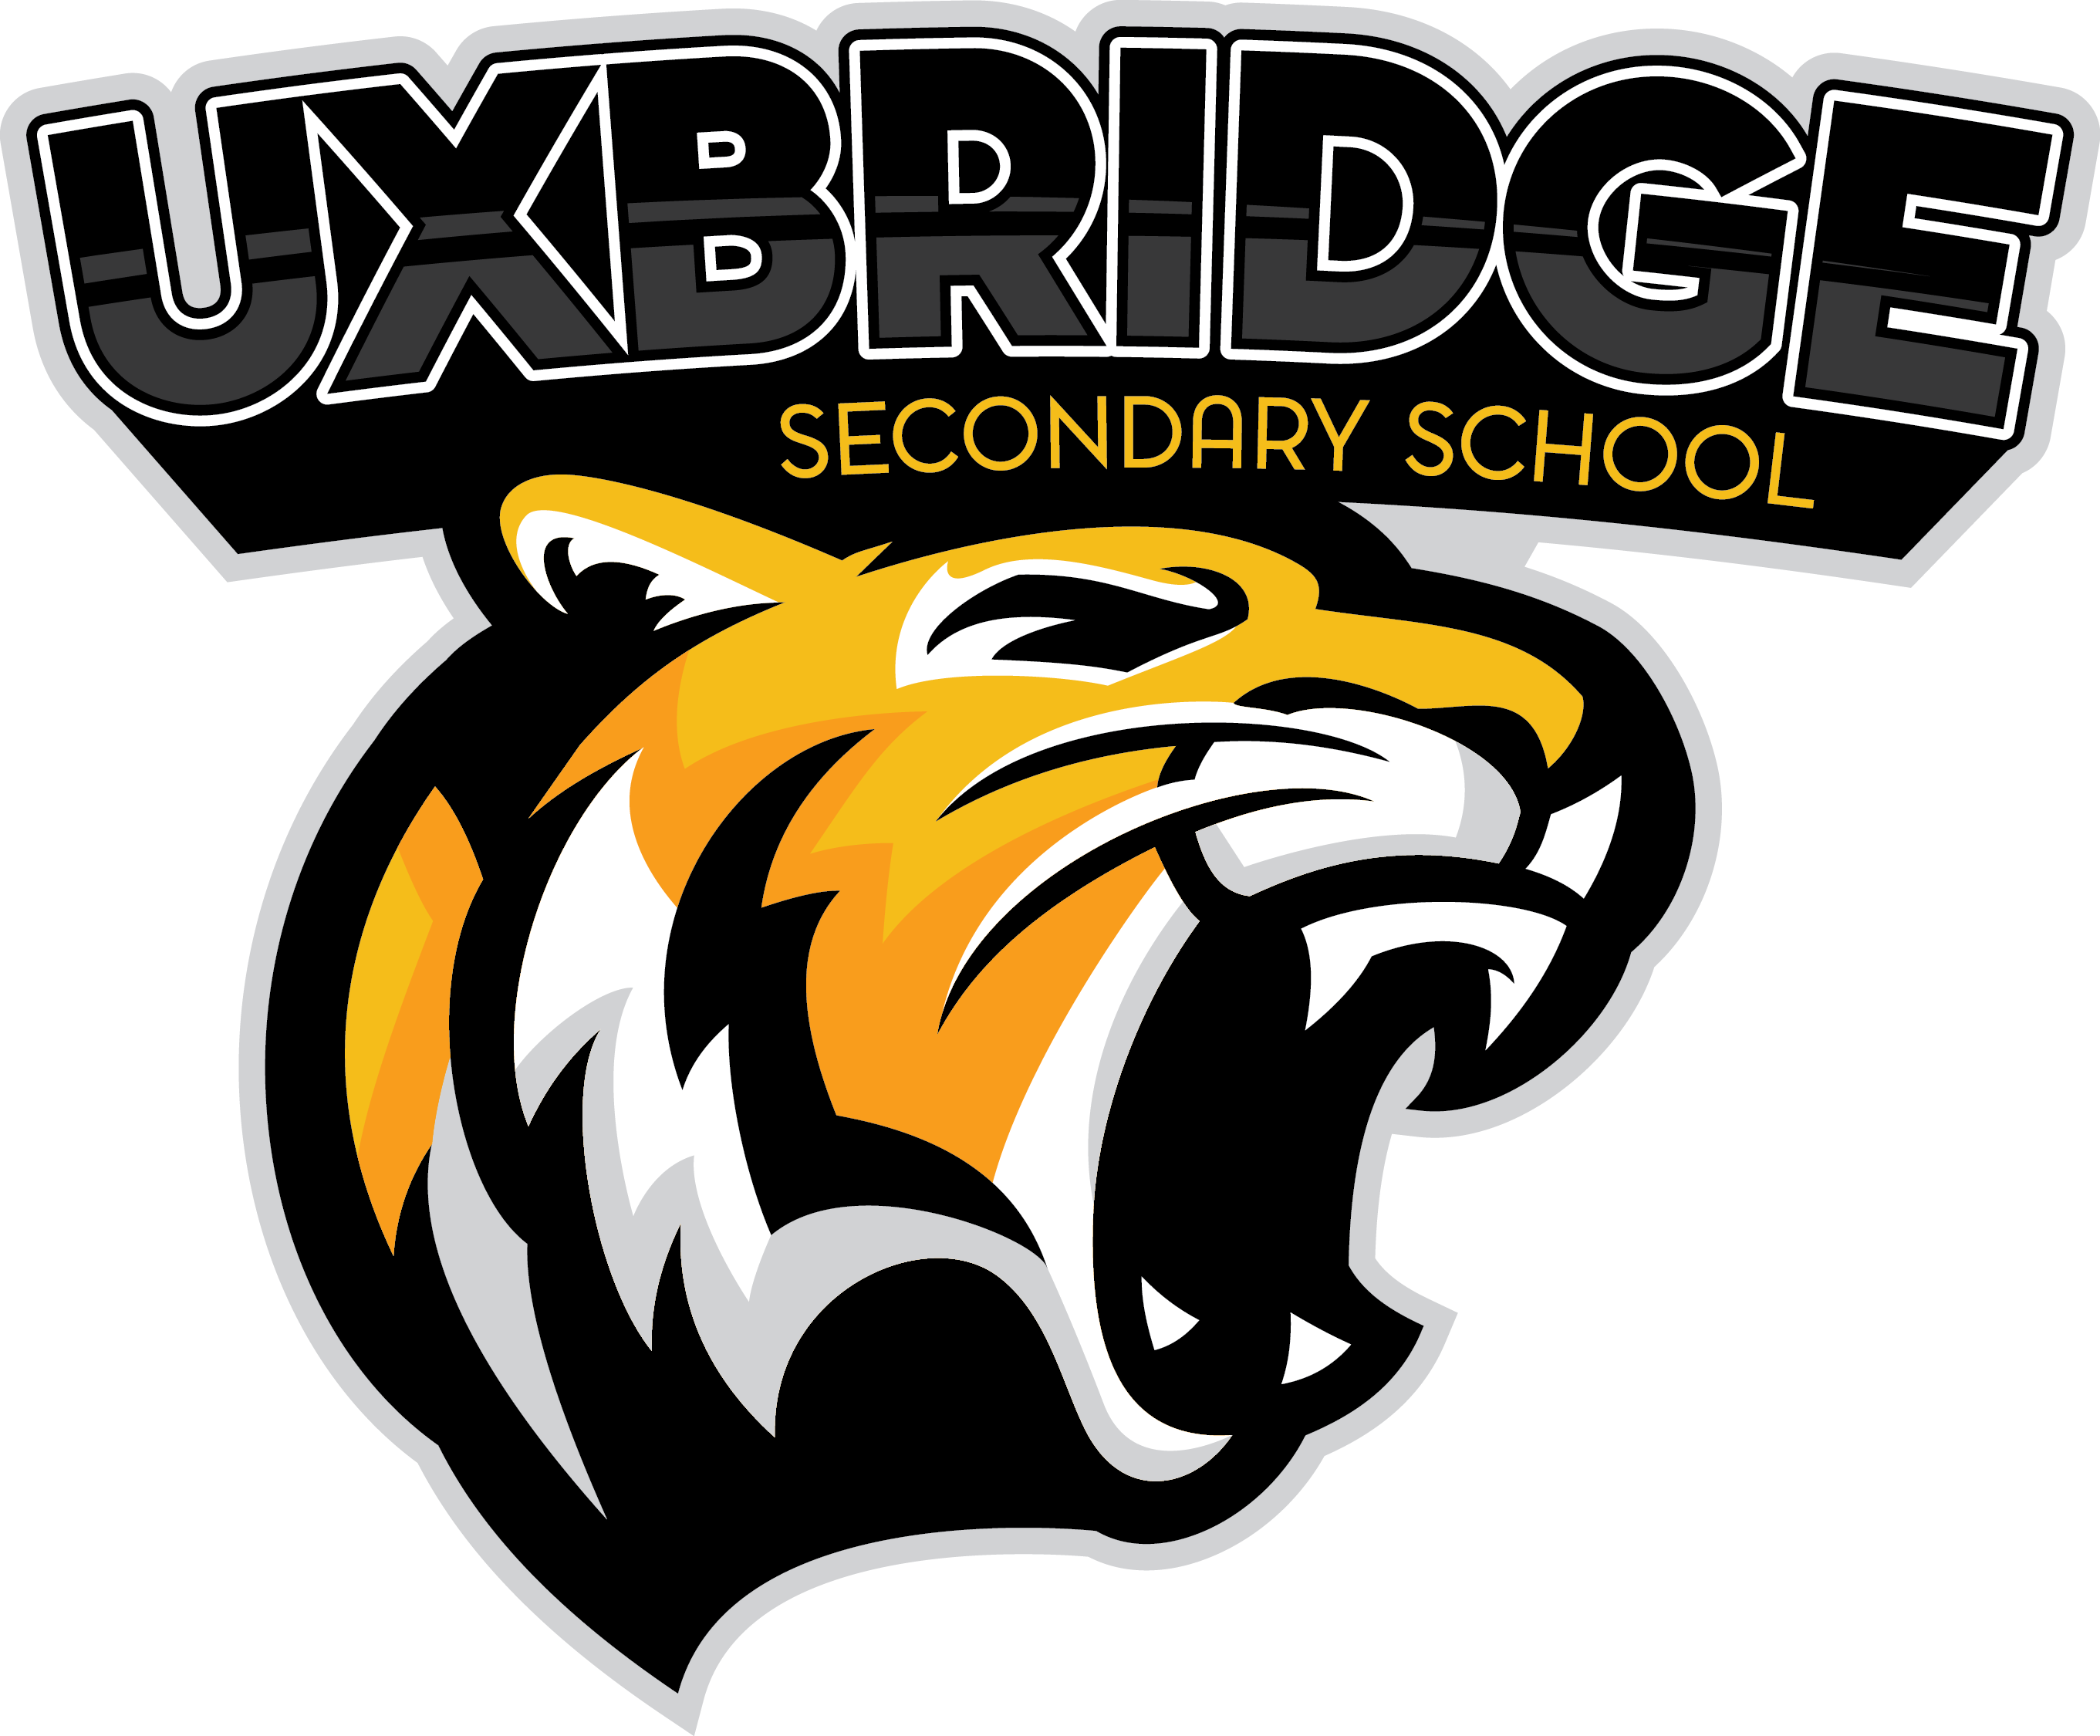 Uxbridge Secondary School